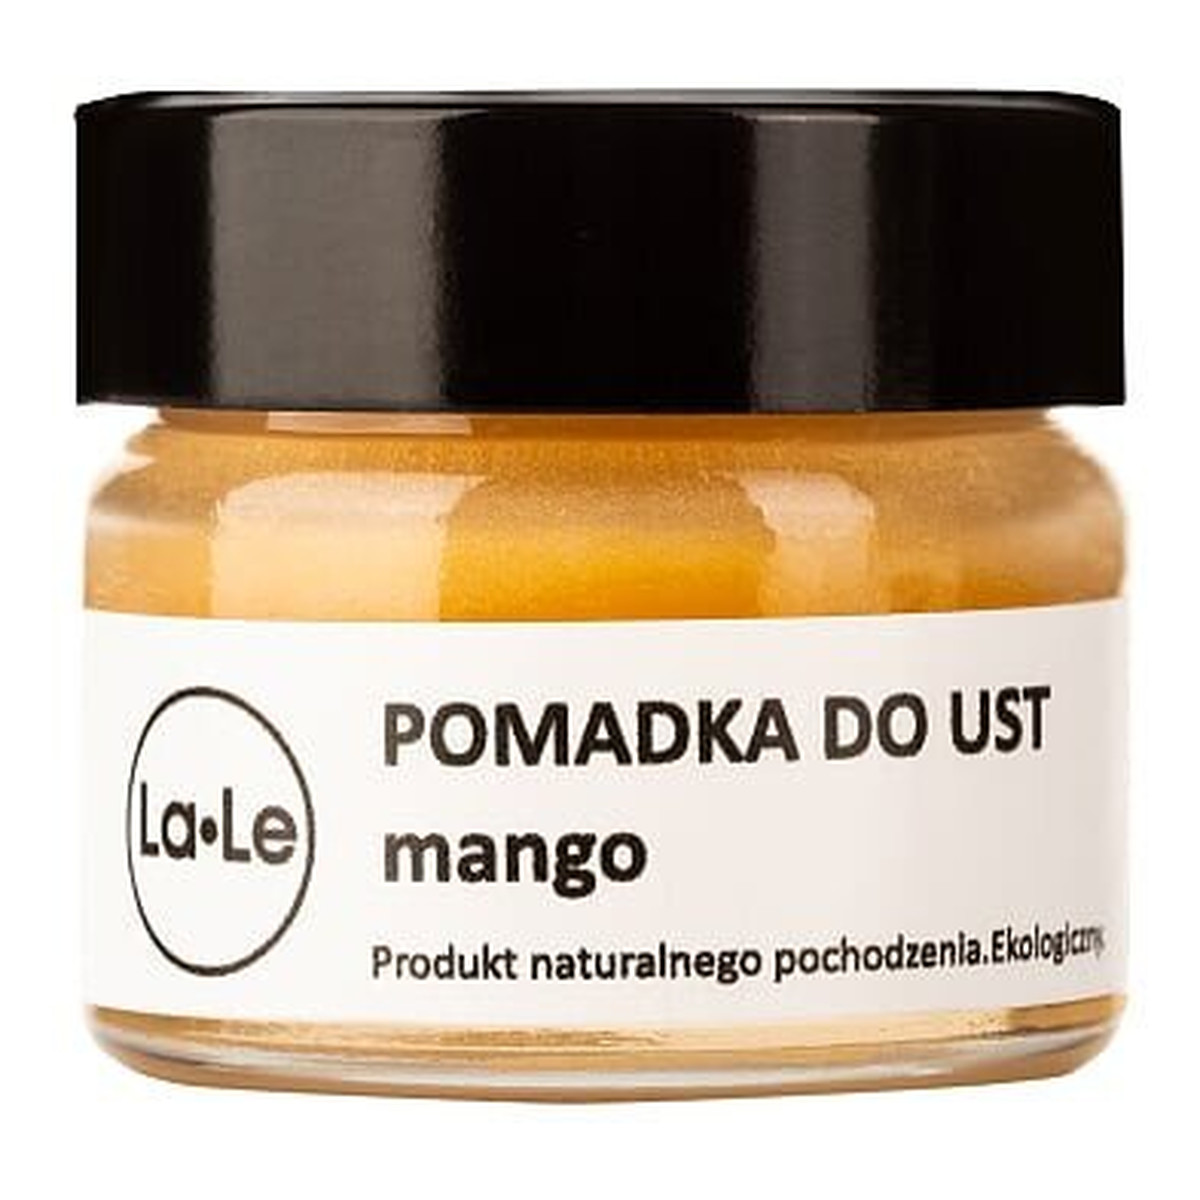 La-Le Pomadka nawilżająca do ust mango 15ml